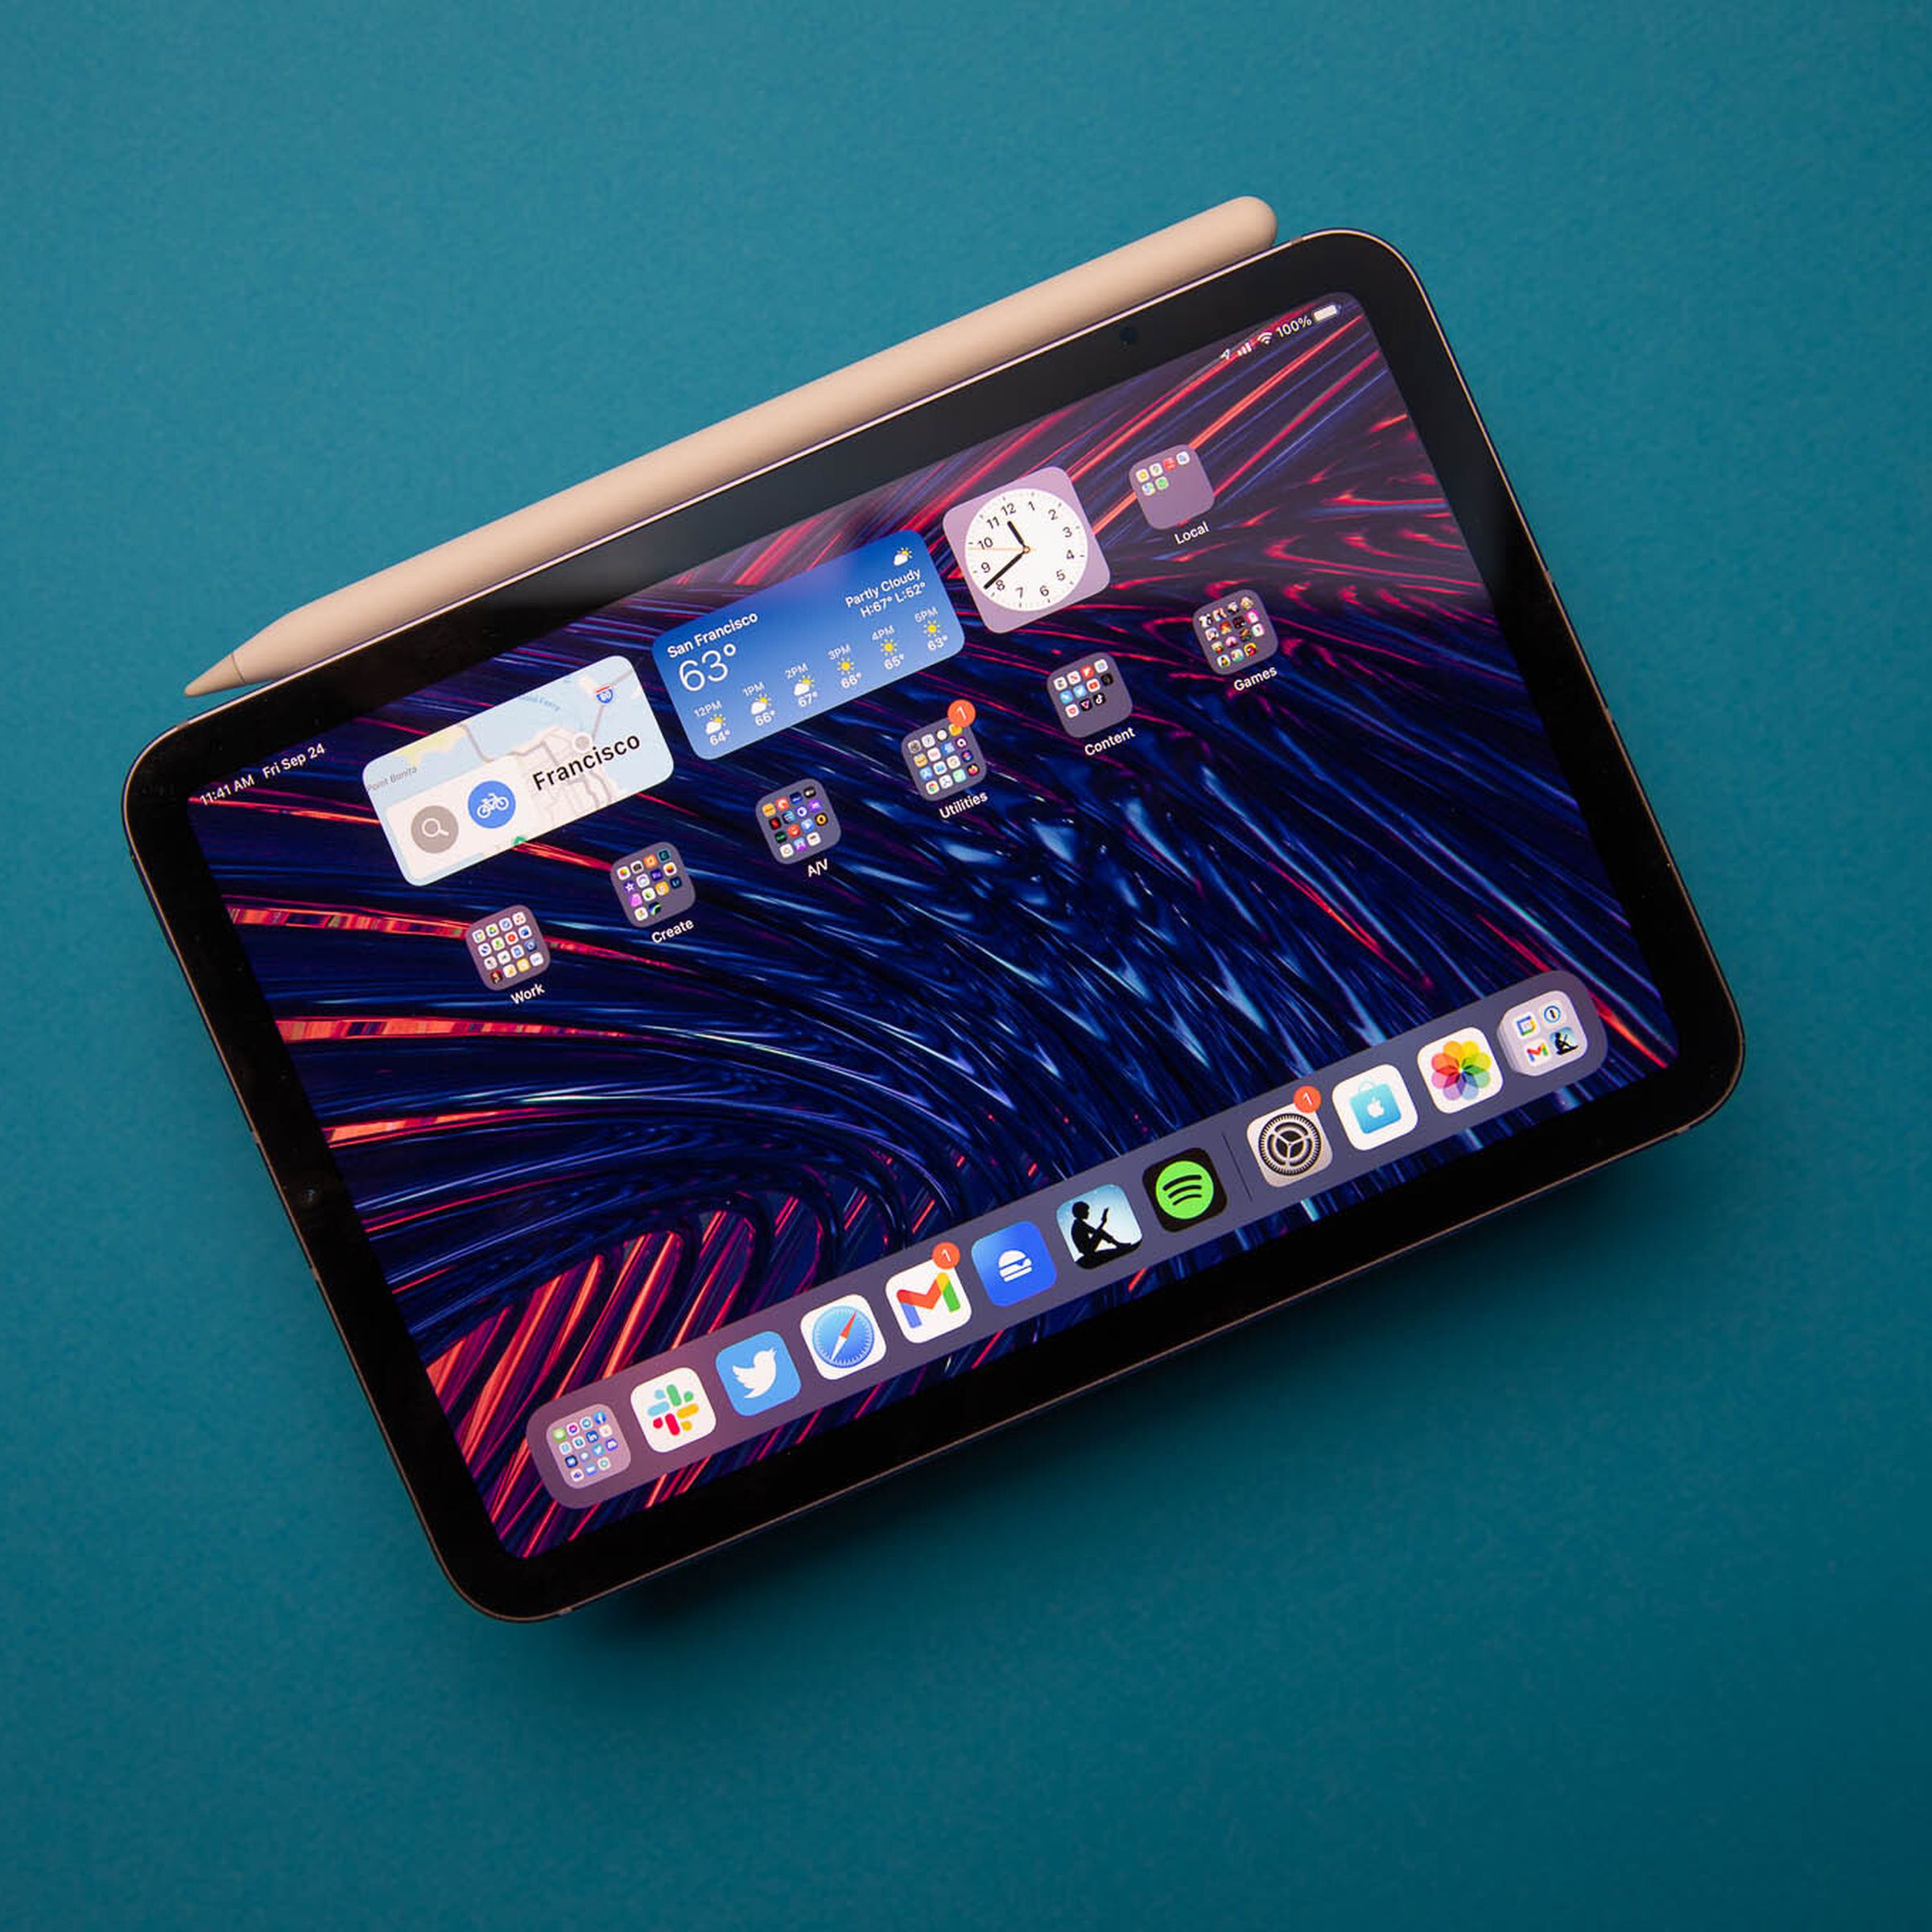 Foto van de 2021 iPad mini met aangehechte Apple Pencil van de tweede generatie op een blauwe achtergrond